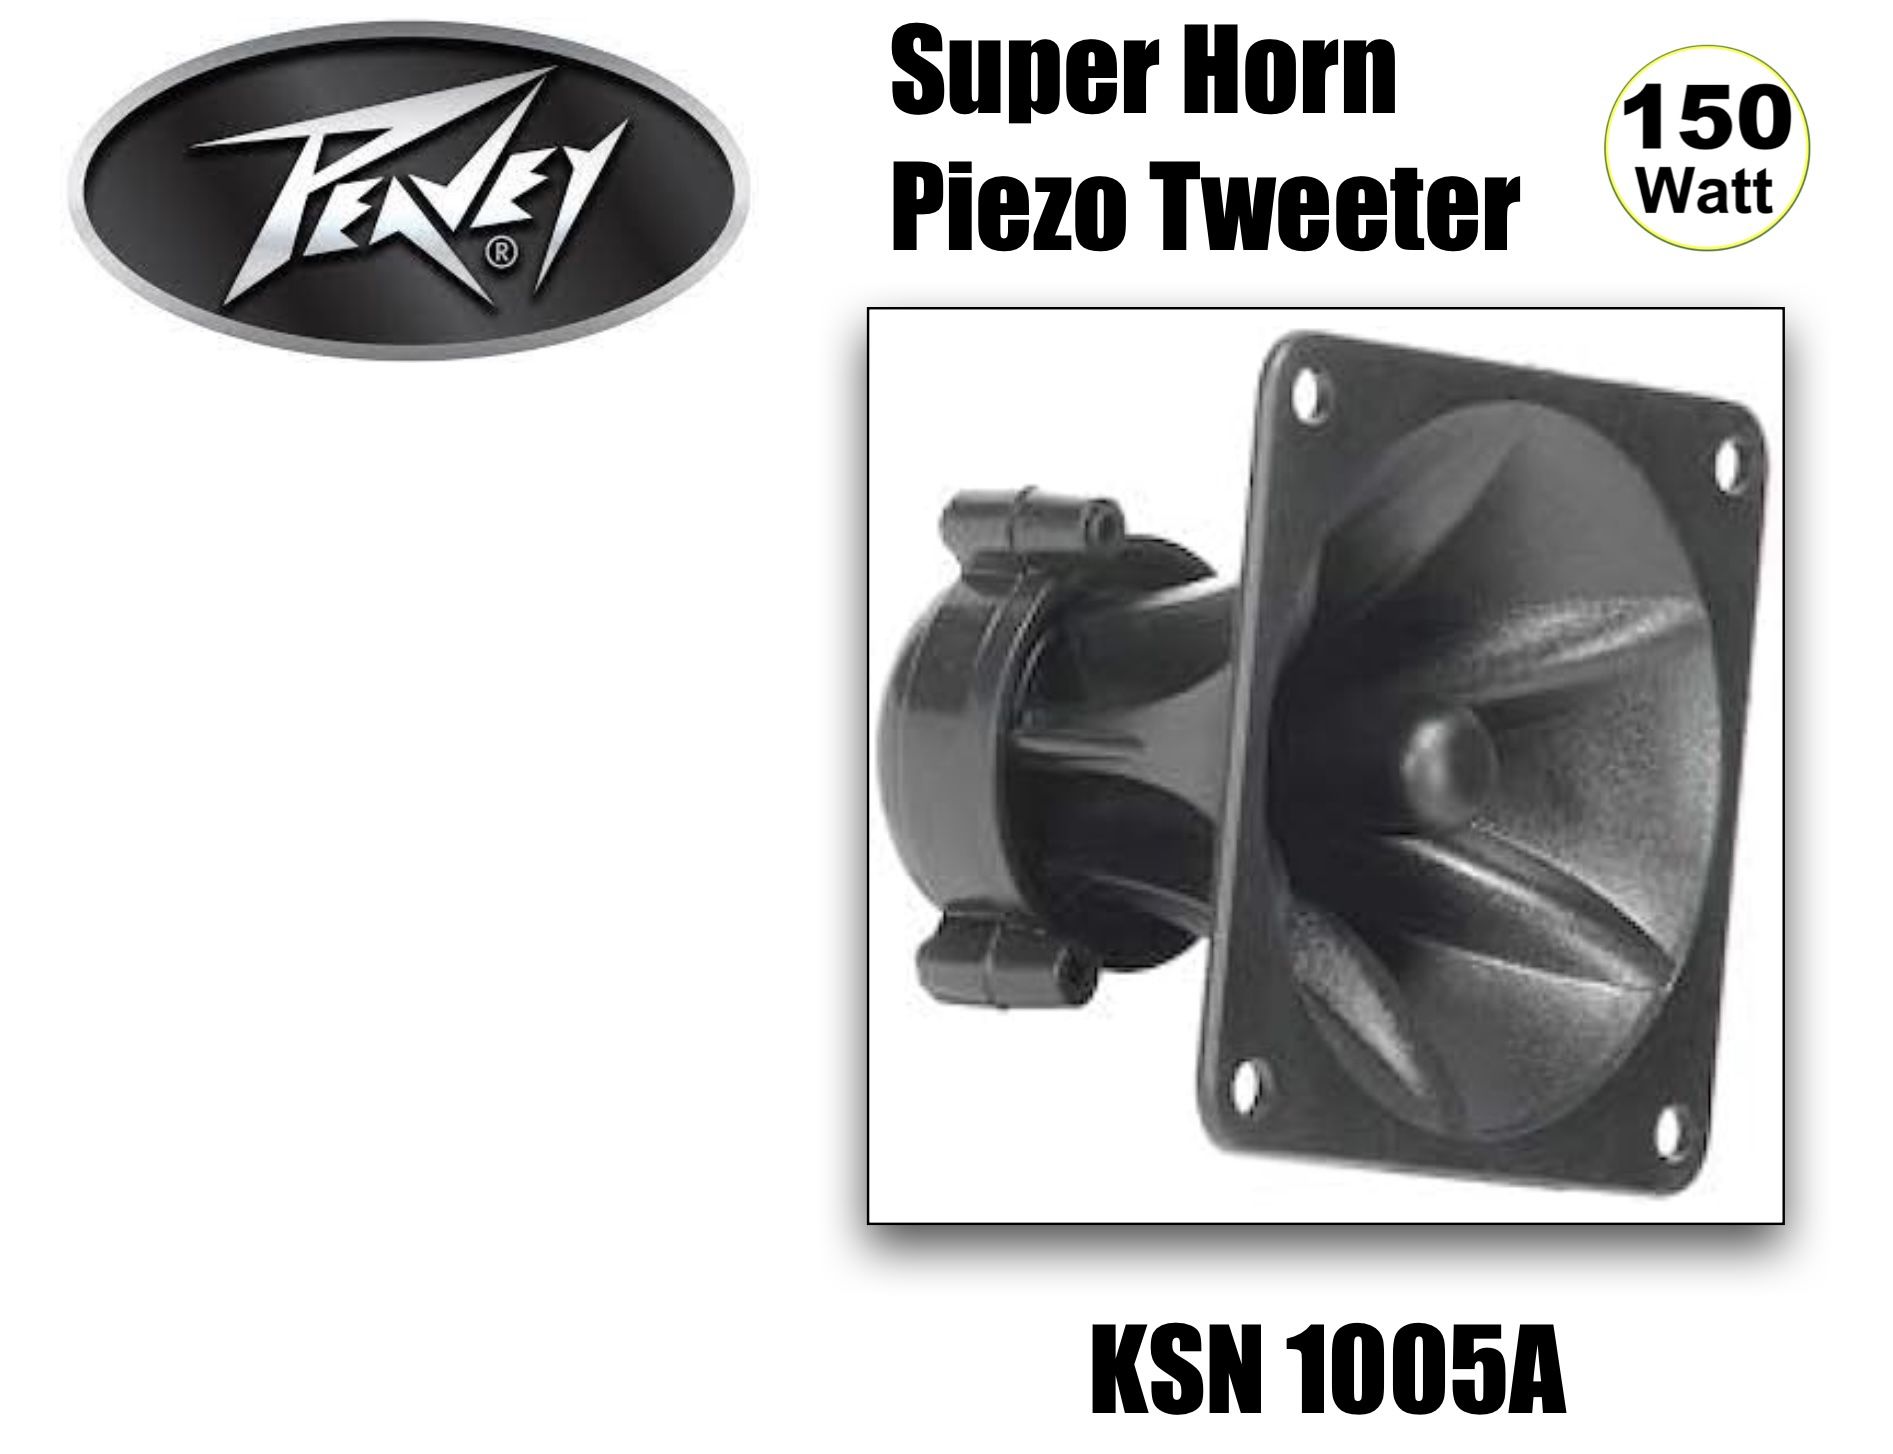 Peavy 3 3/4” Super Horn PIEZO TWEETER  replacement Speaker 150 watts, New In Box!